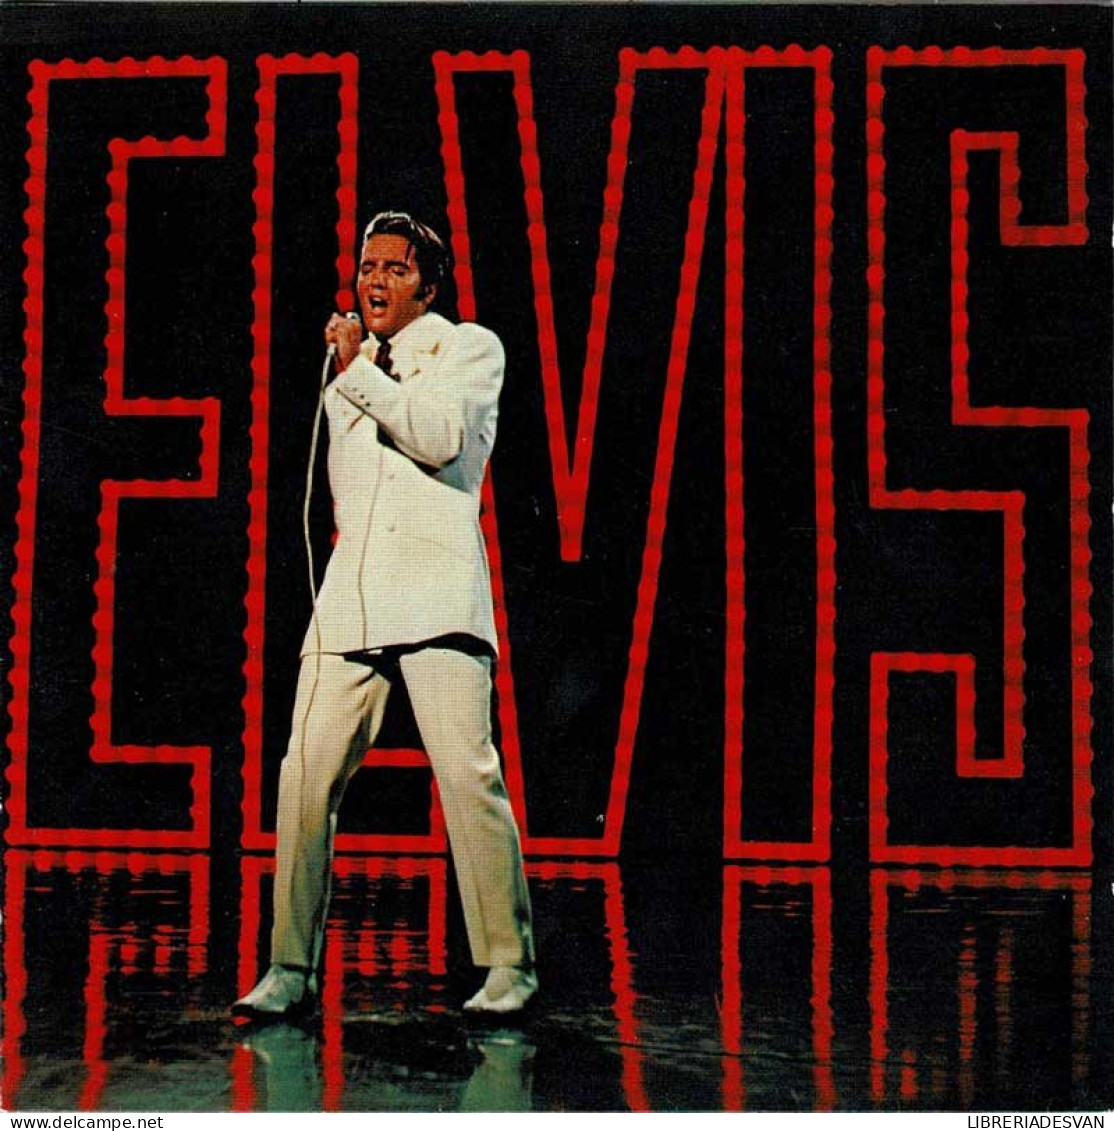 Elvis Presley - NBC-TV Special. CD - Rock